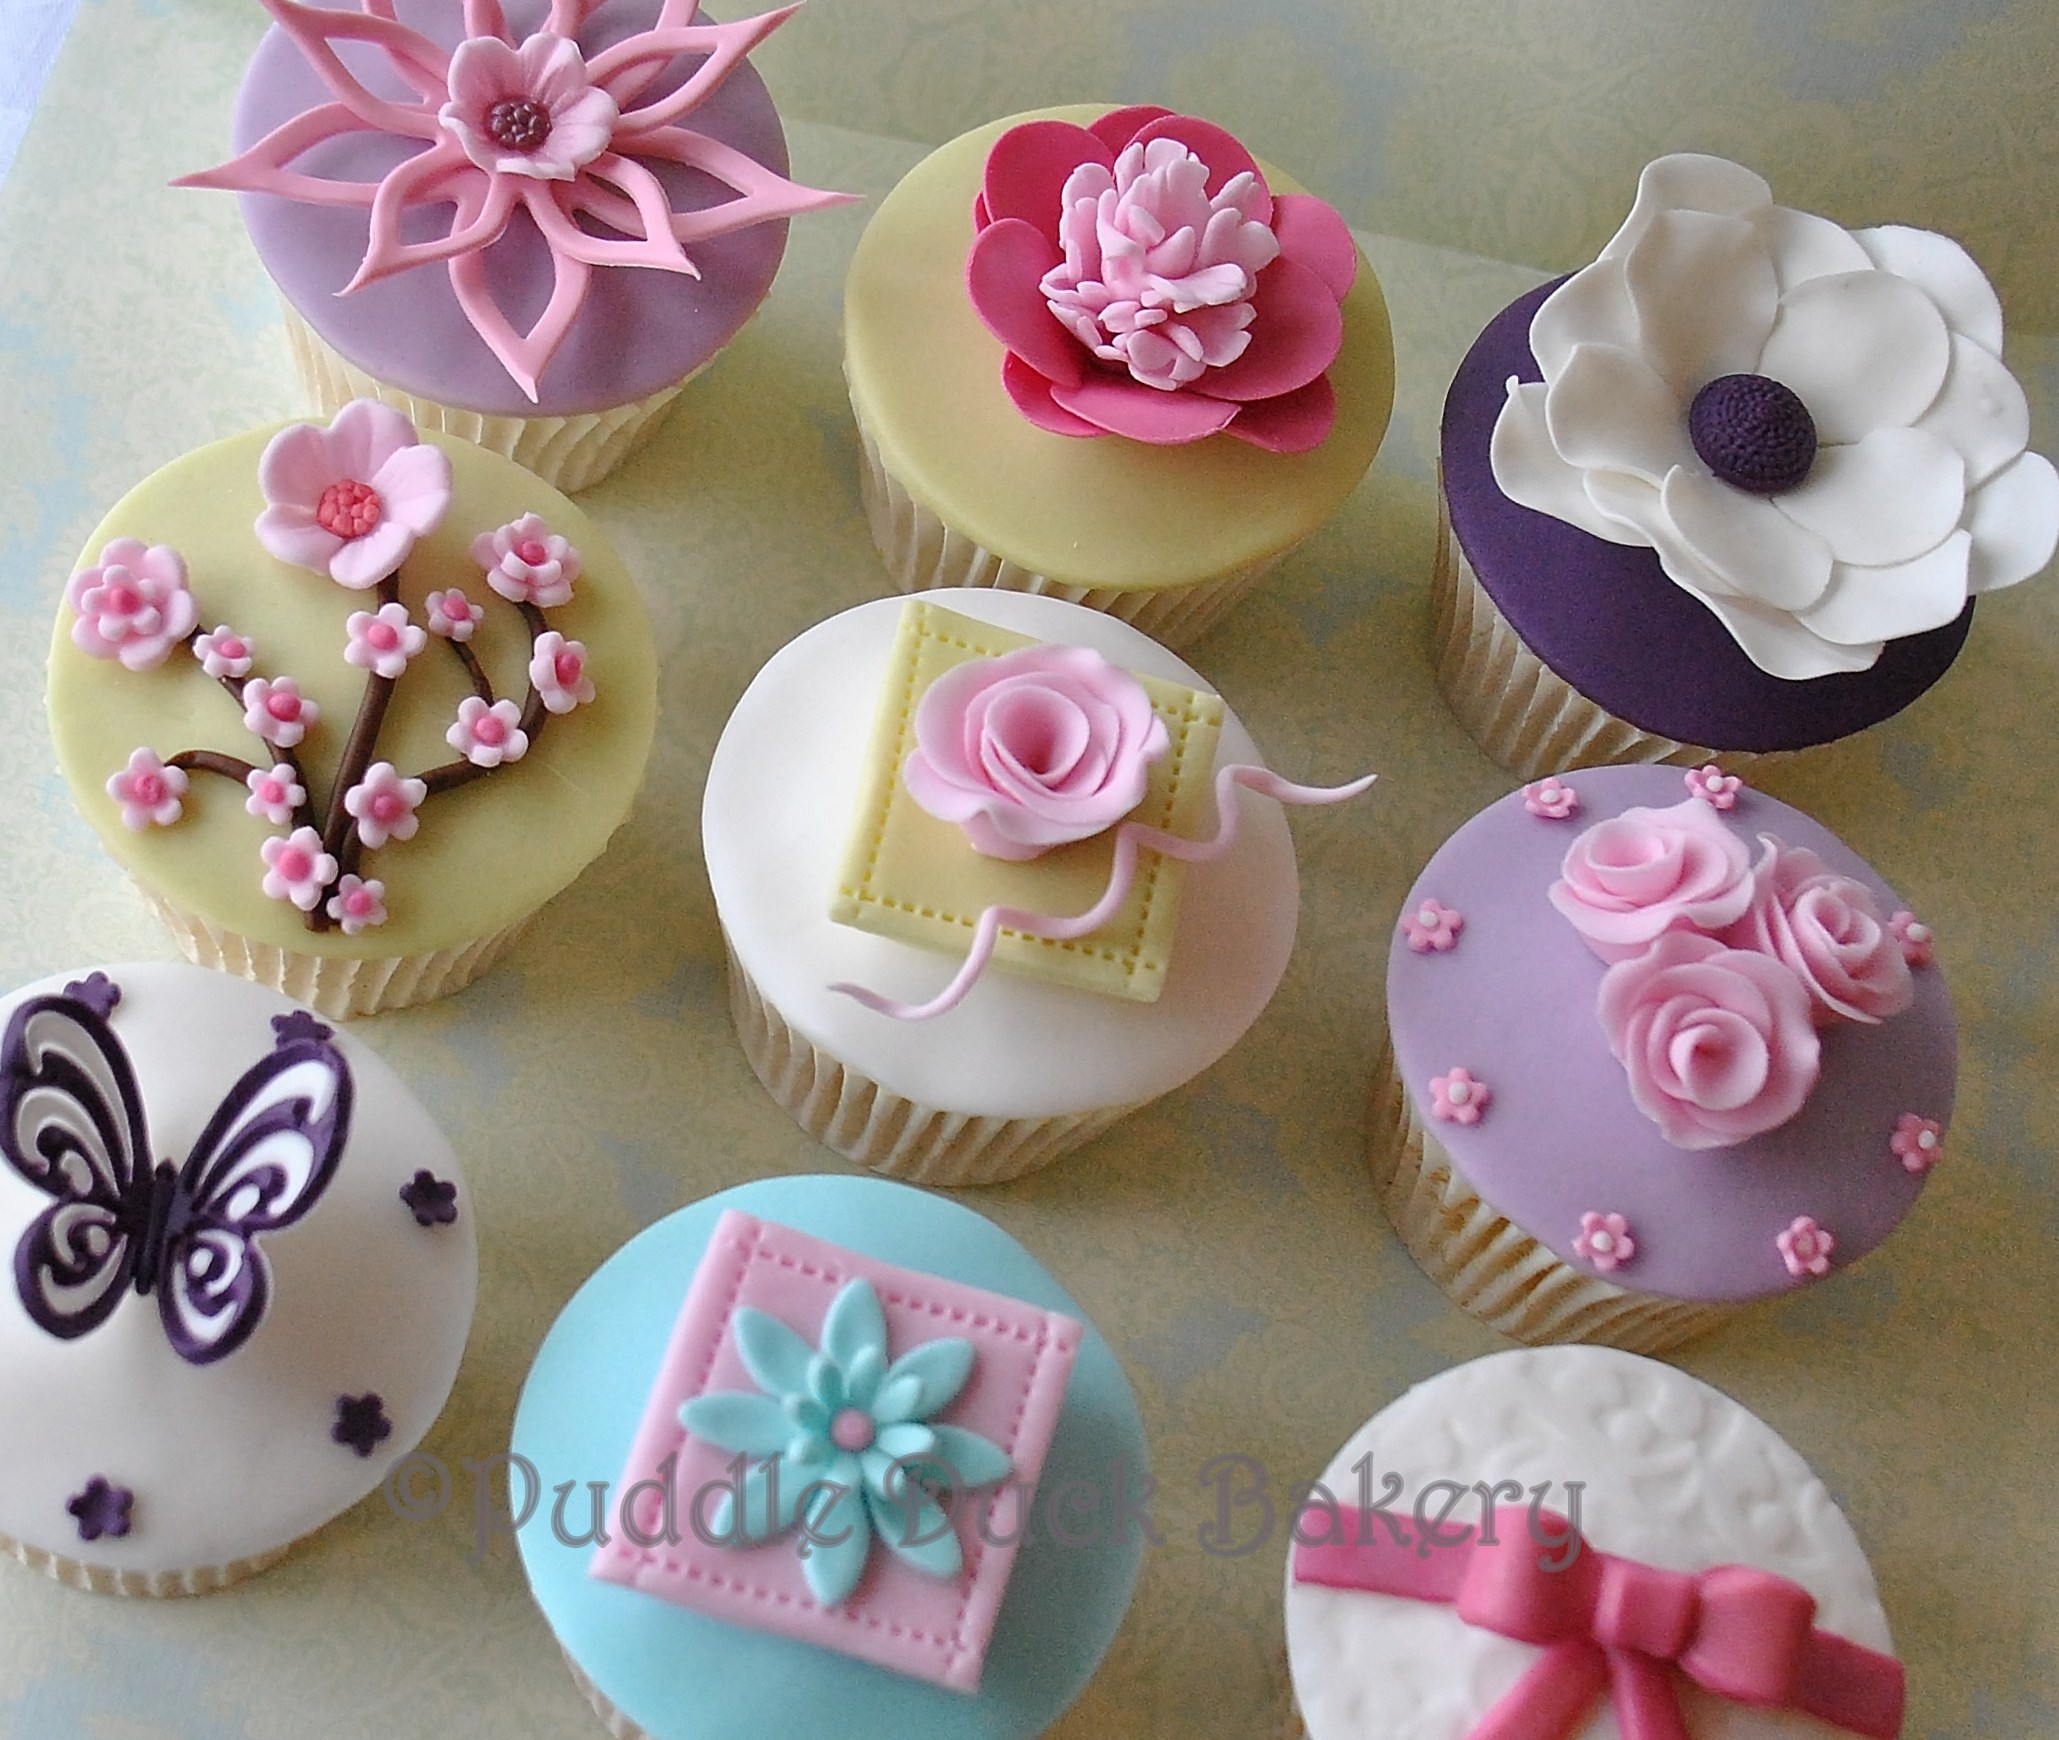 An assortment of sample cupcakes